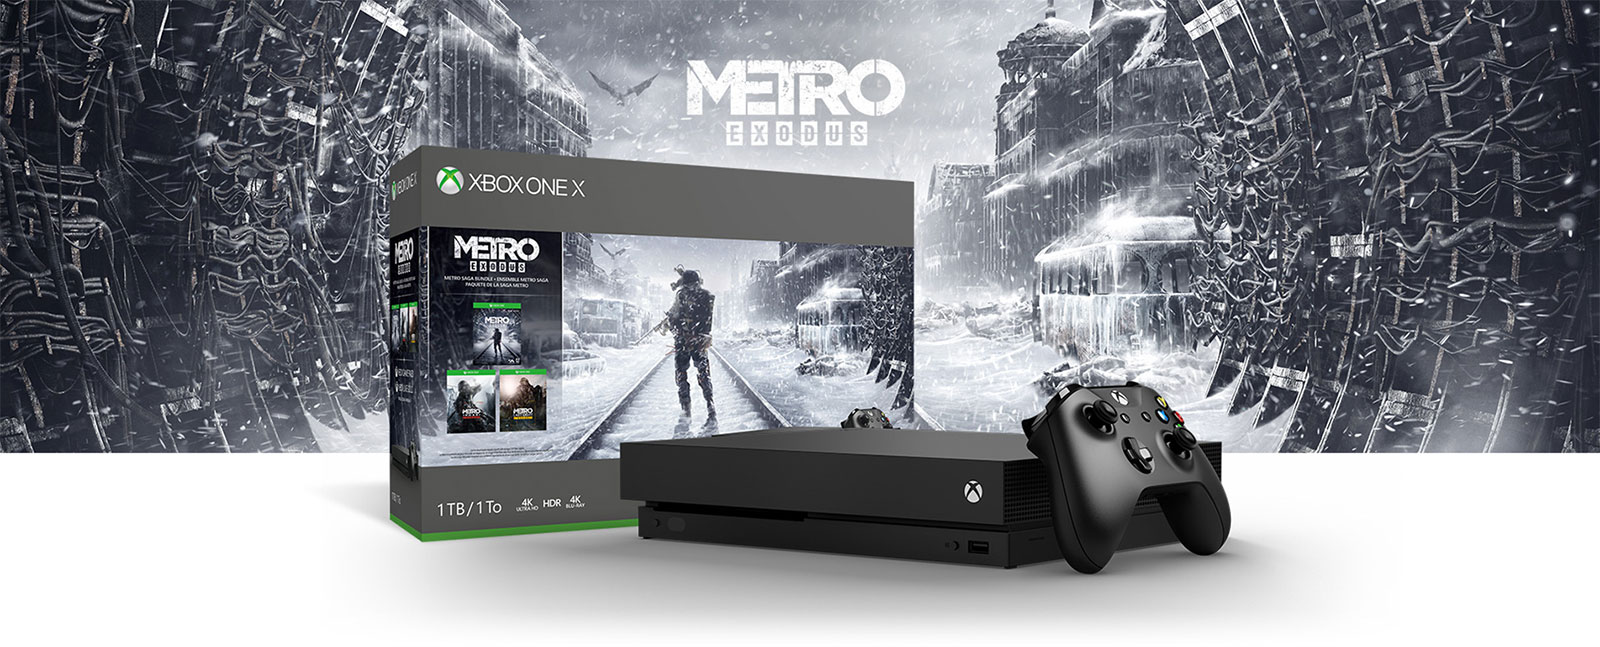 Коробка консоли Xbox с игрой Metro Exodus